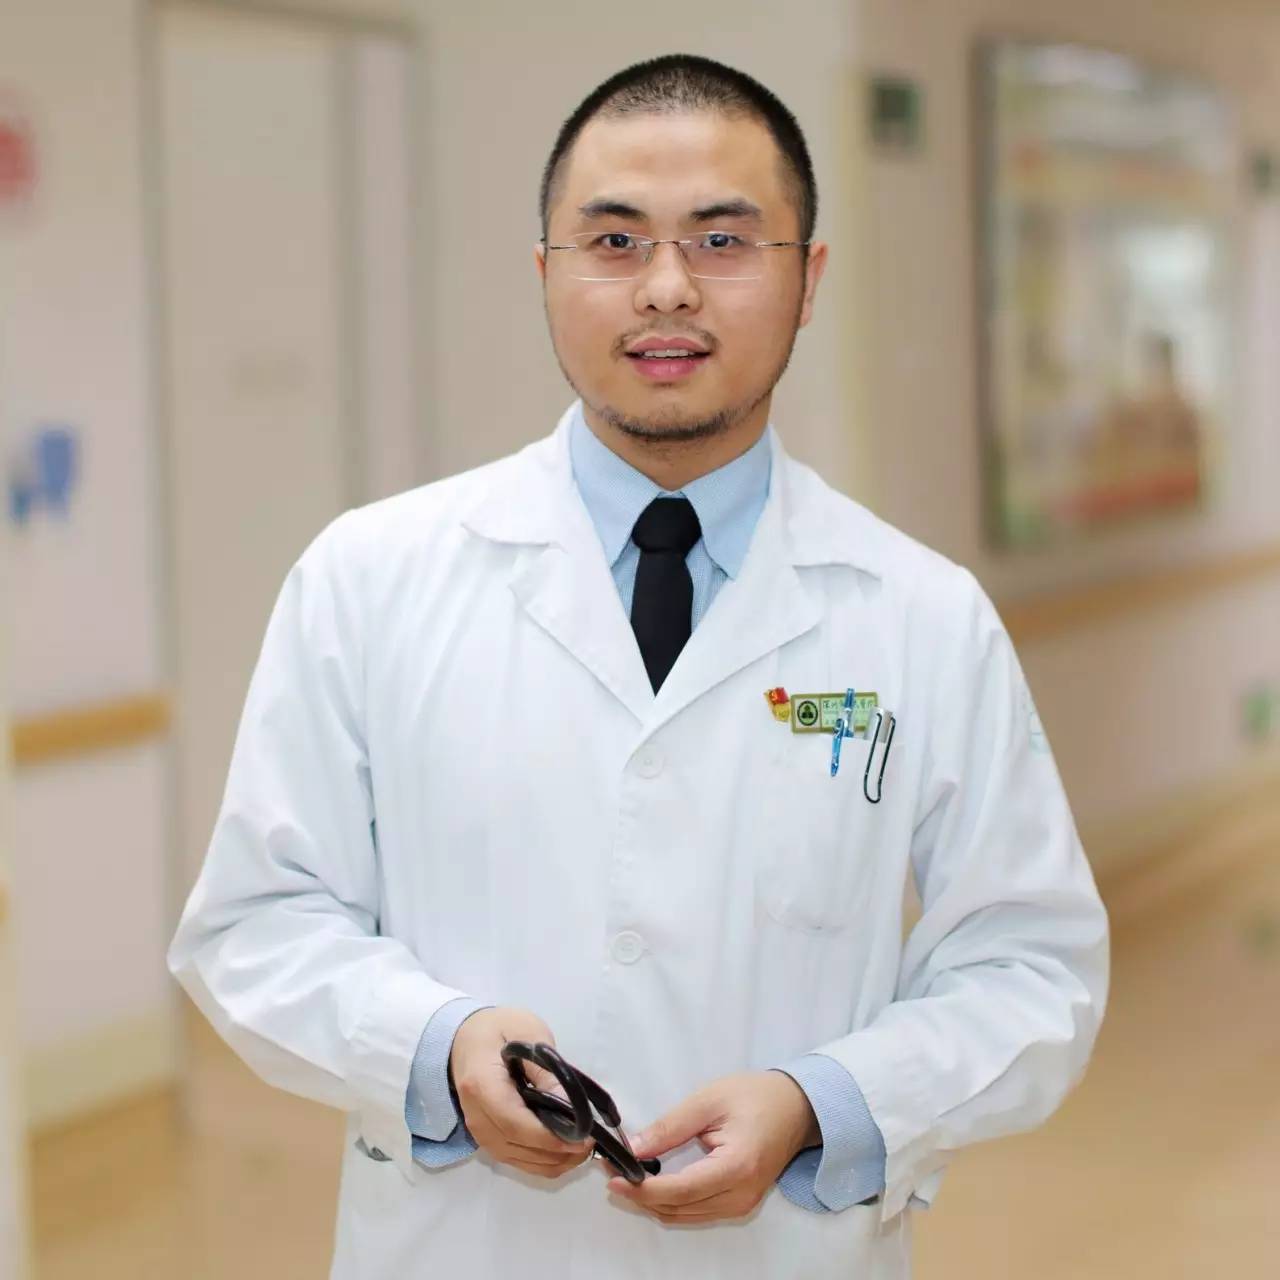 博士毕业于中南大学湘雅医院,师从长江学者,湘雅医院副院长,著名骨科